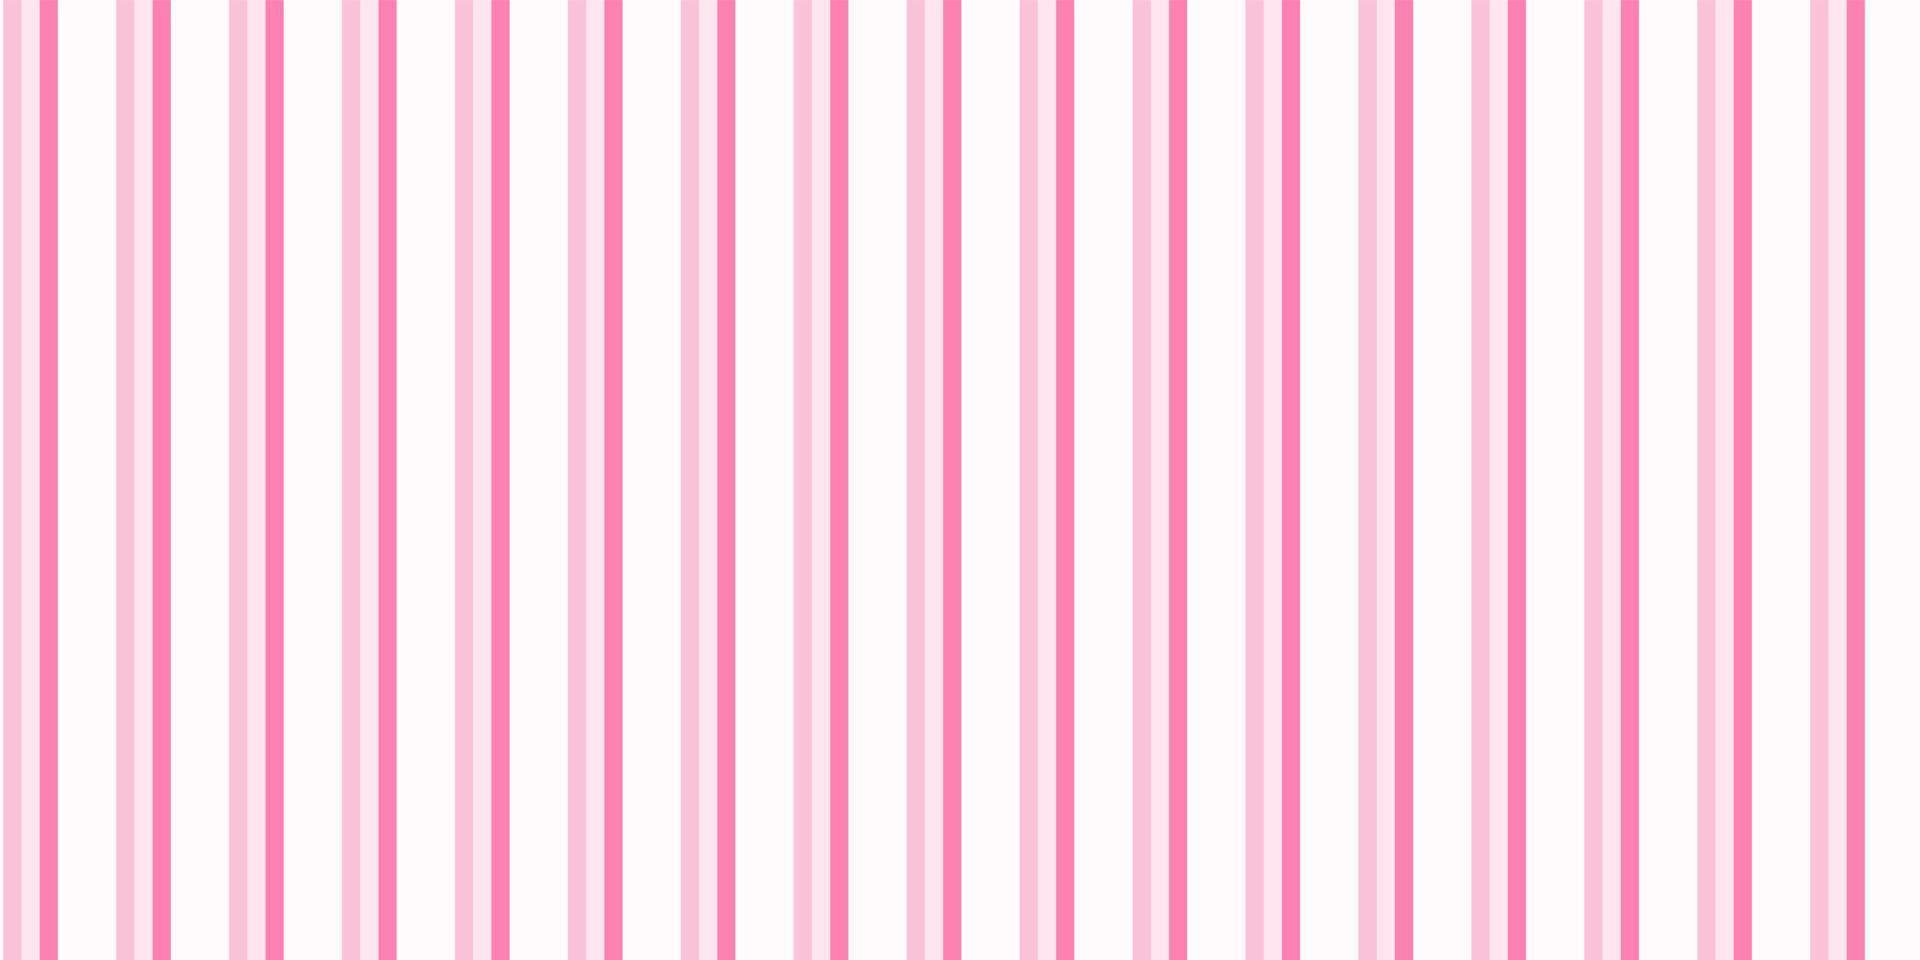 vertikaler rosa Schattenstreifen, Vektordesign, nahtlos. Banner, Tapete, Hintergrund, Party, Baby, Wrap, Textil, Stoff, Geschenkpapier, Texturkonzepte. vektor